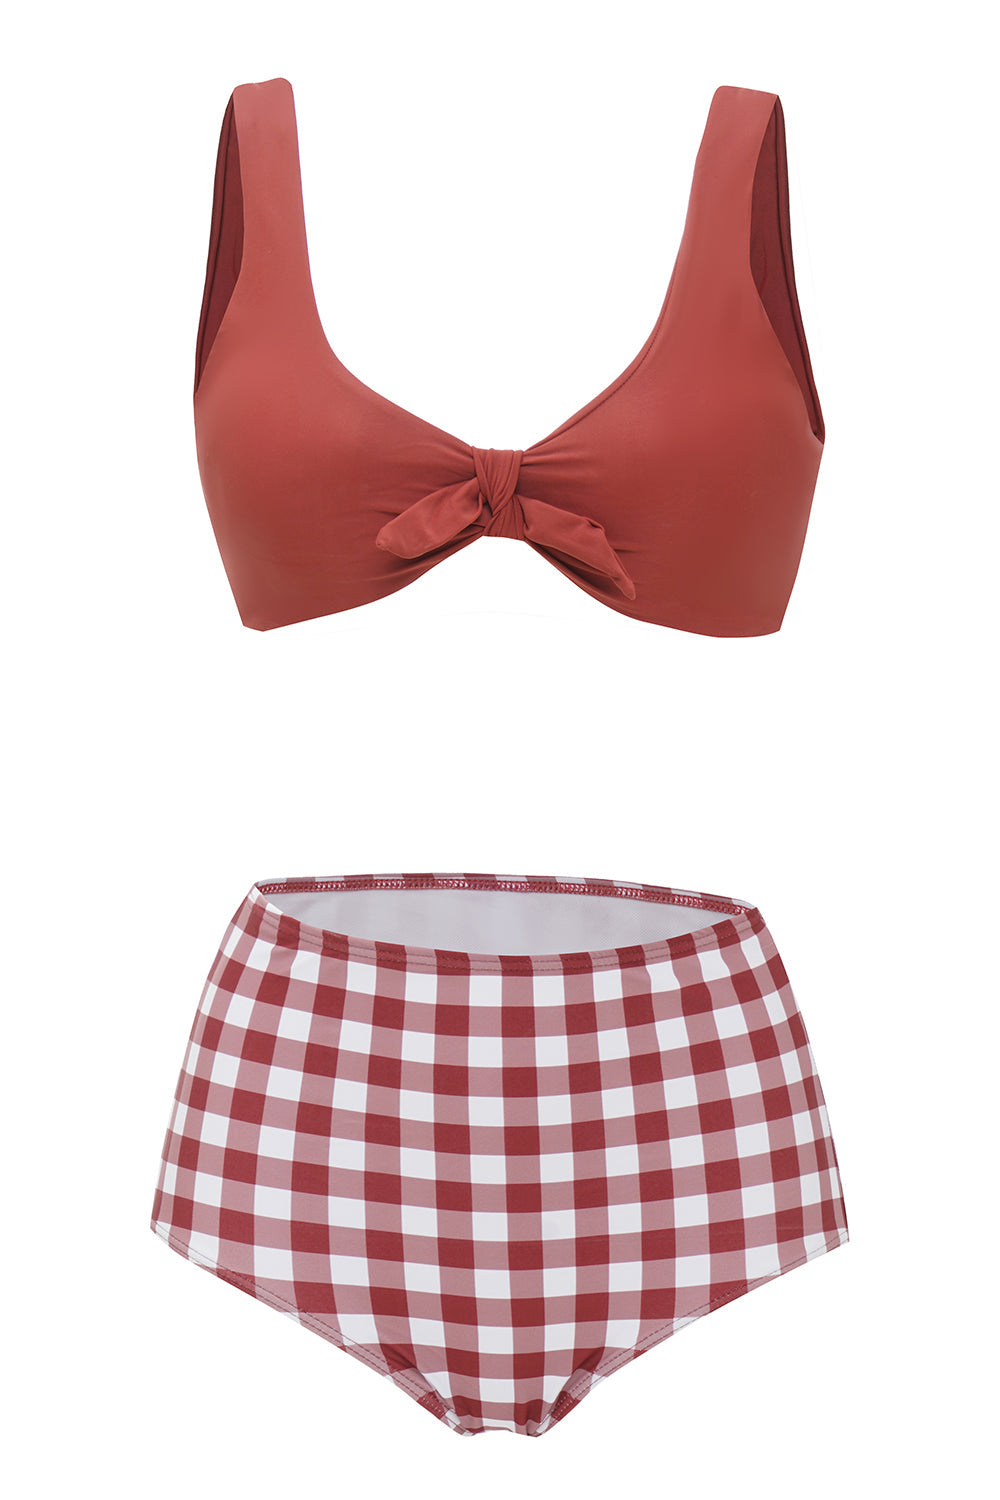 Two Piece Red Plaid Swimwear